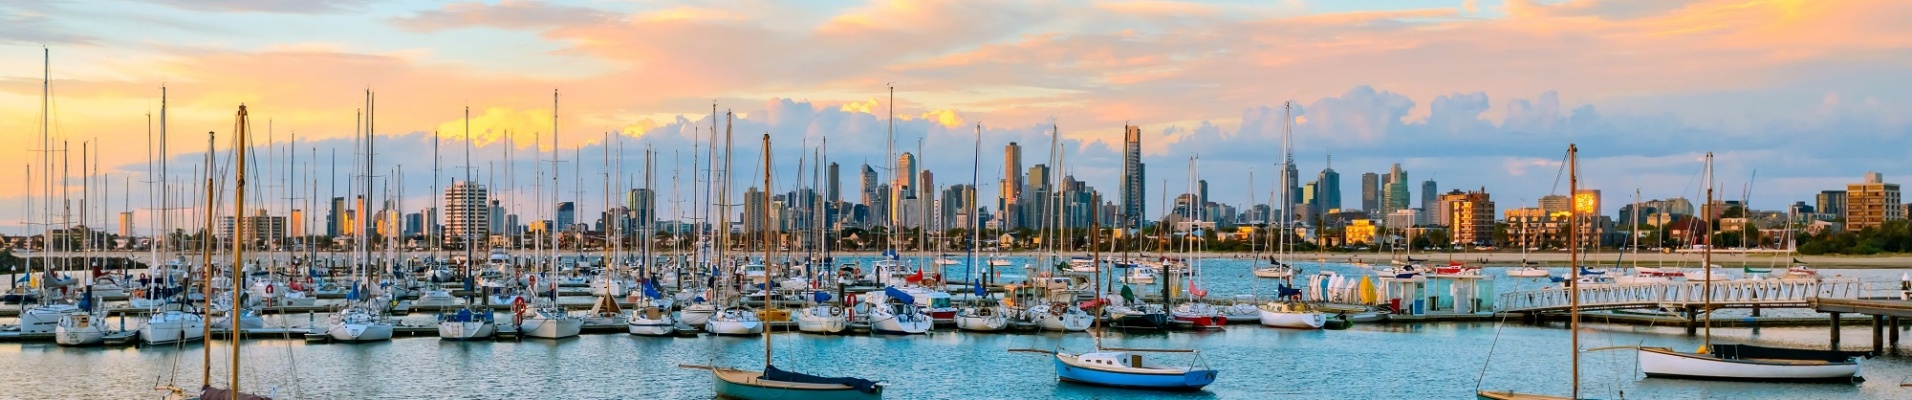 Skyline de Melbourne avec des bateaux au port